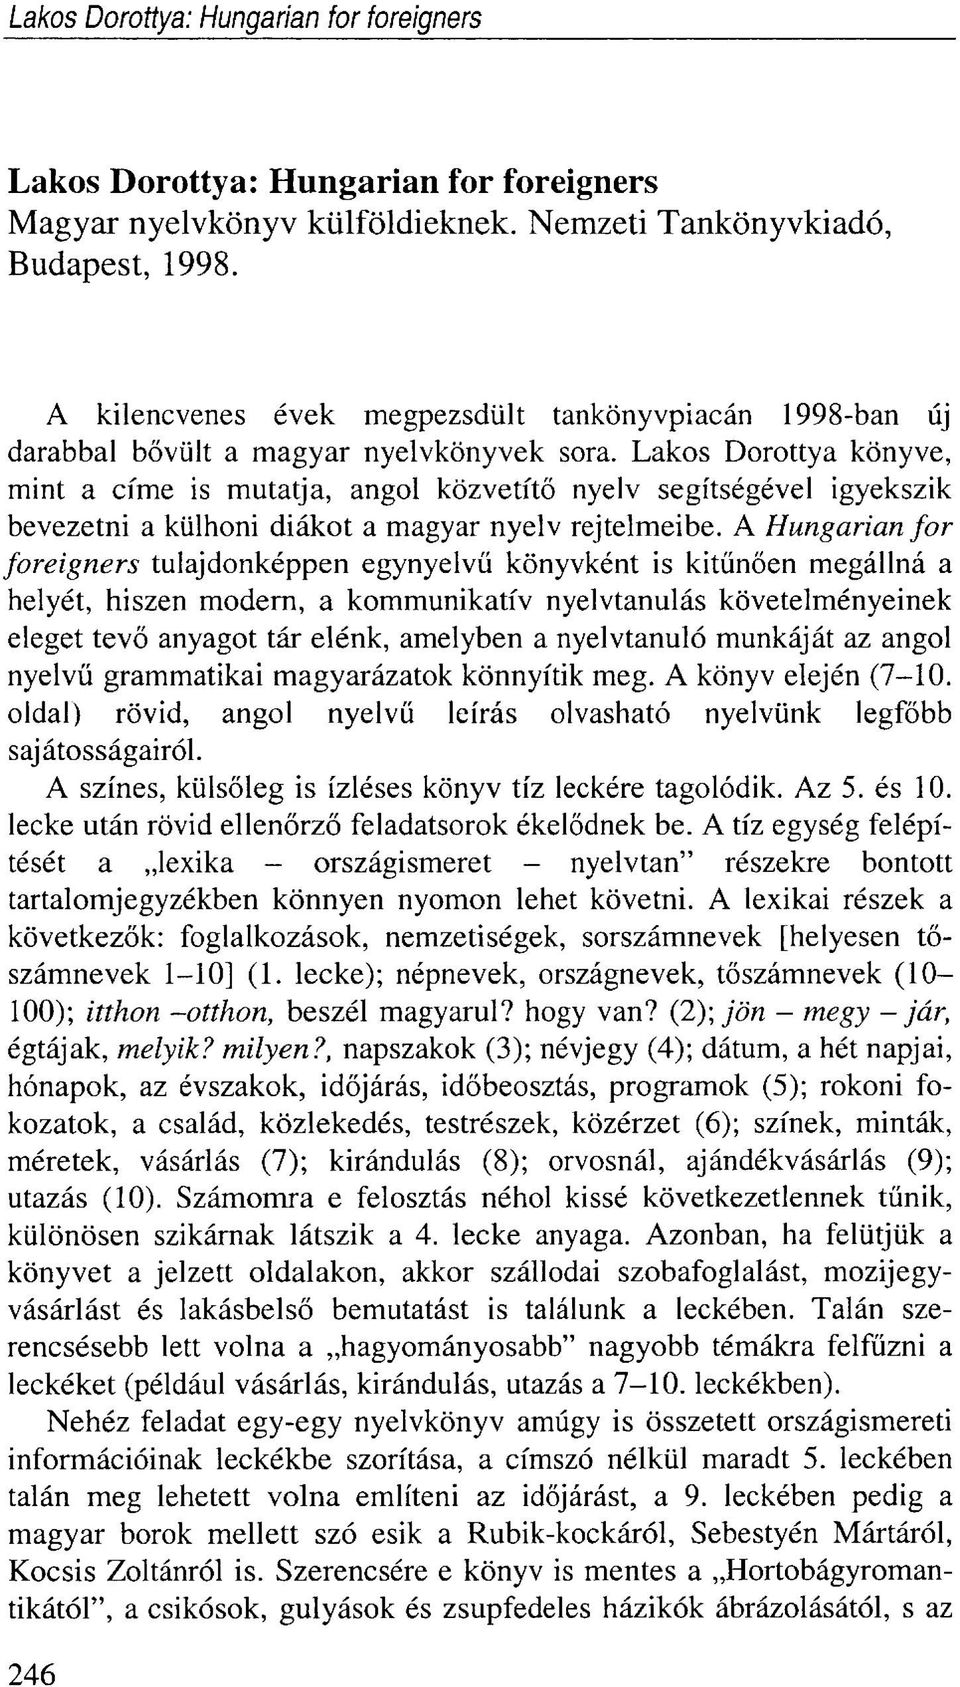 Lakos Dorottya könyve, mint a címe is mutatja, angol közvetítő nyelv segítségével igyekszik bevezetni a külhoni diákot a magyar nyelv rejtelmeibe.